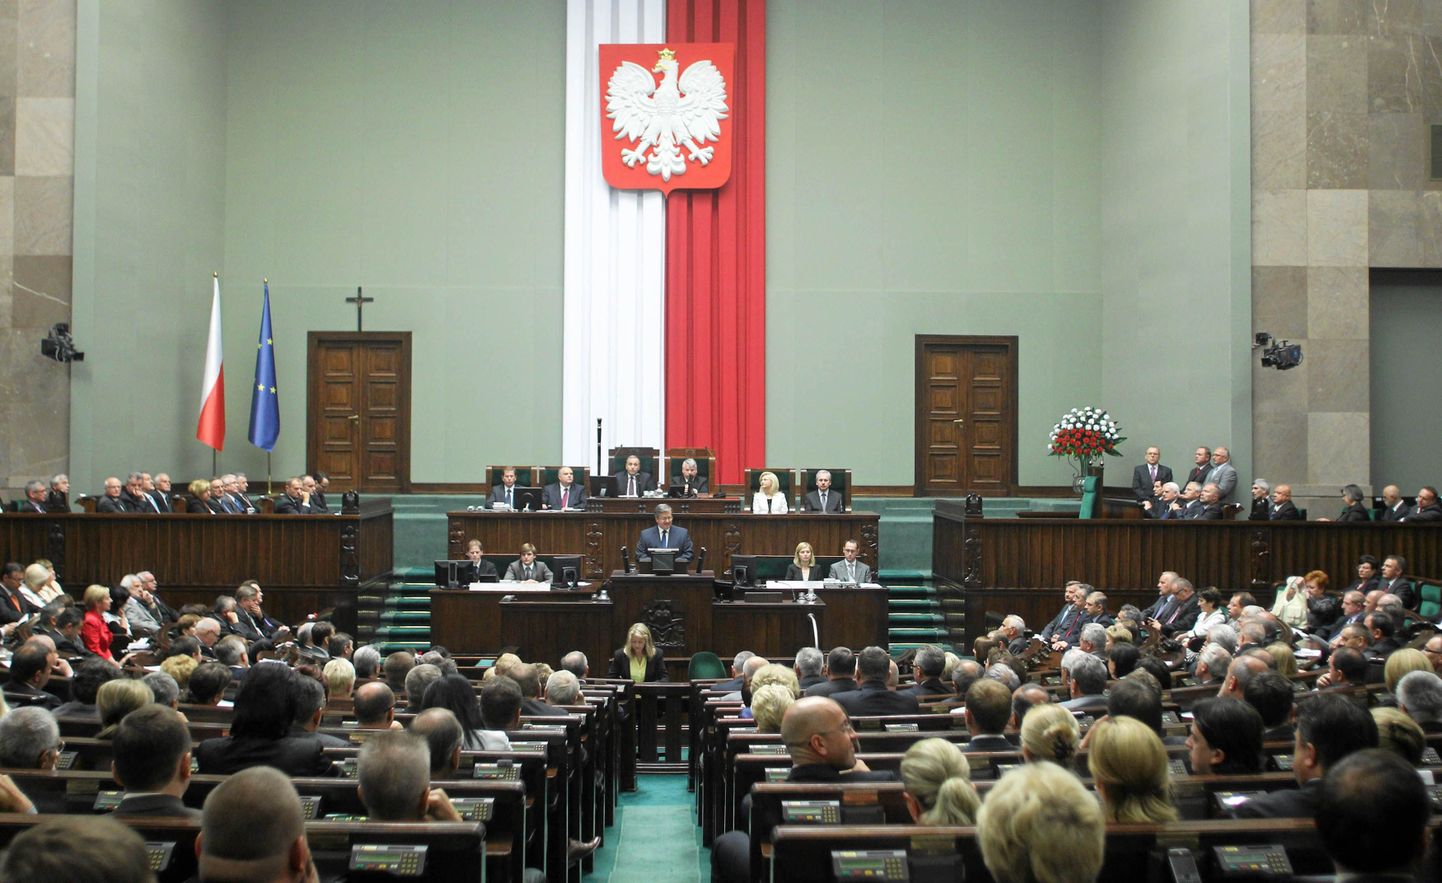 Poola parlamendi istungitesaal